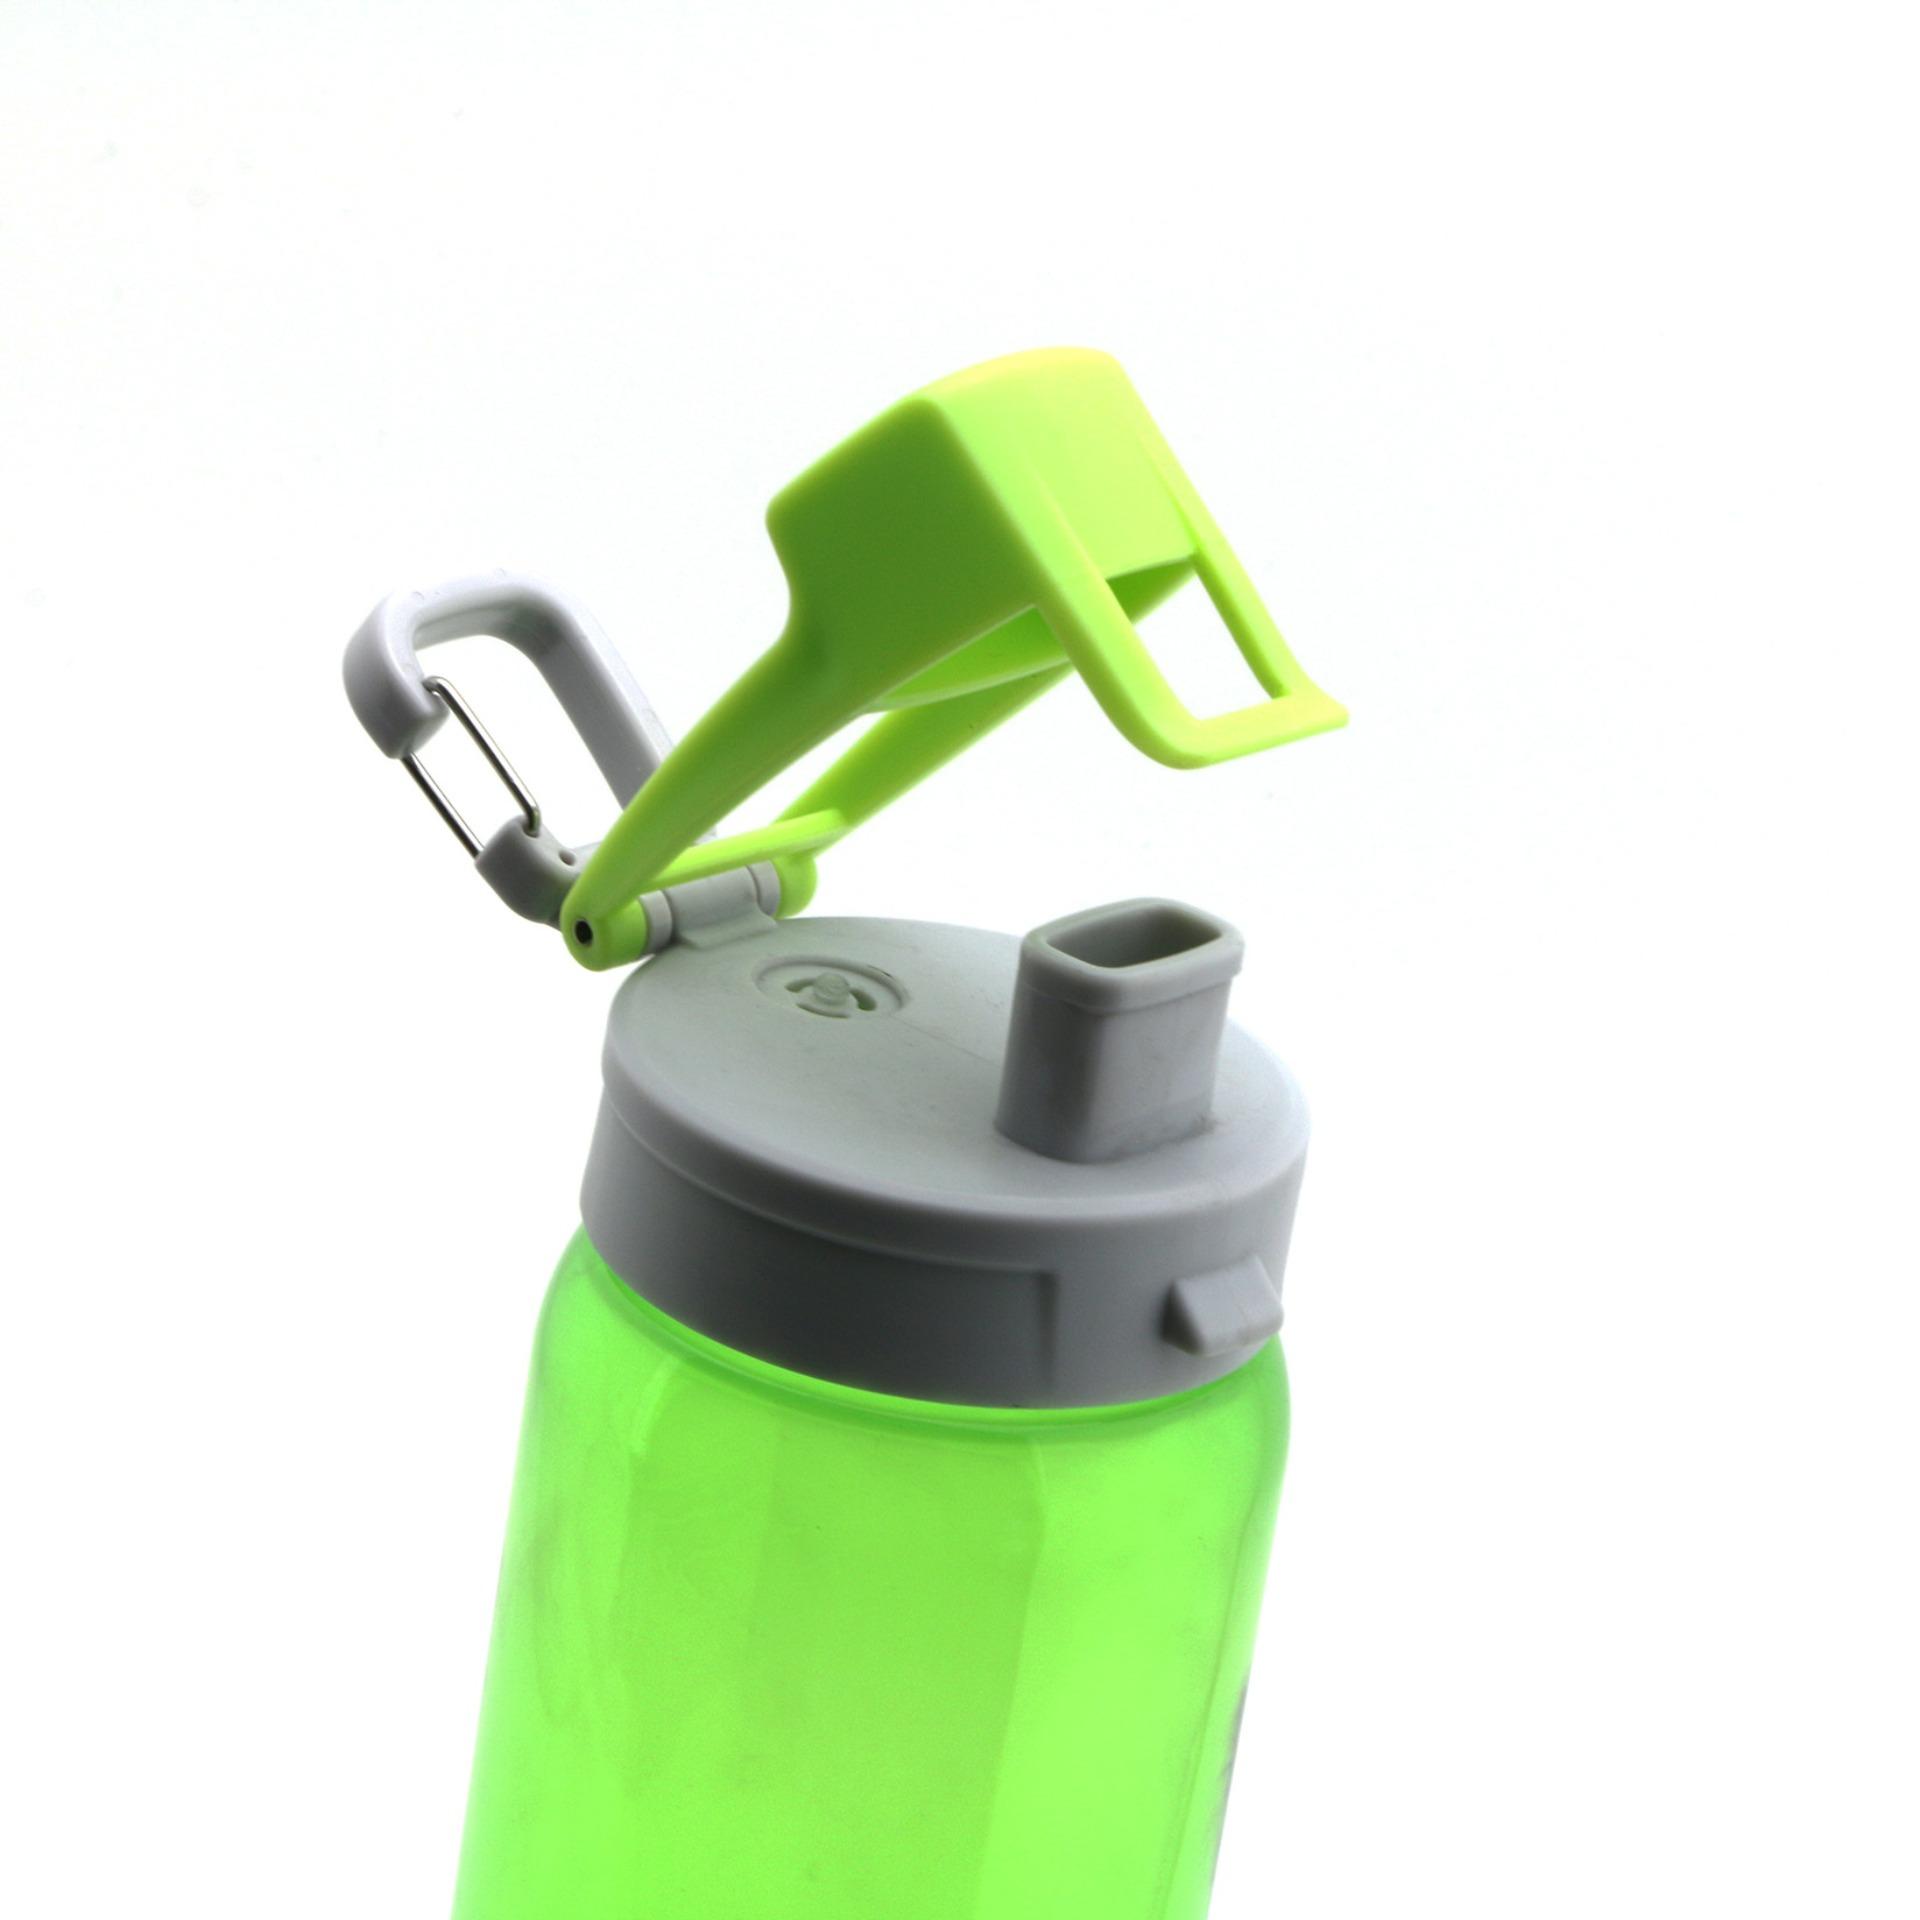 Bình nước ELMICH 750ML, bình nước thể thao, bình nước cầm tay làm bằng nhựa TRITAN chịu nhiệt tốt, an toàn cho sức khỏe người dùng